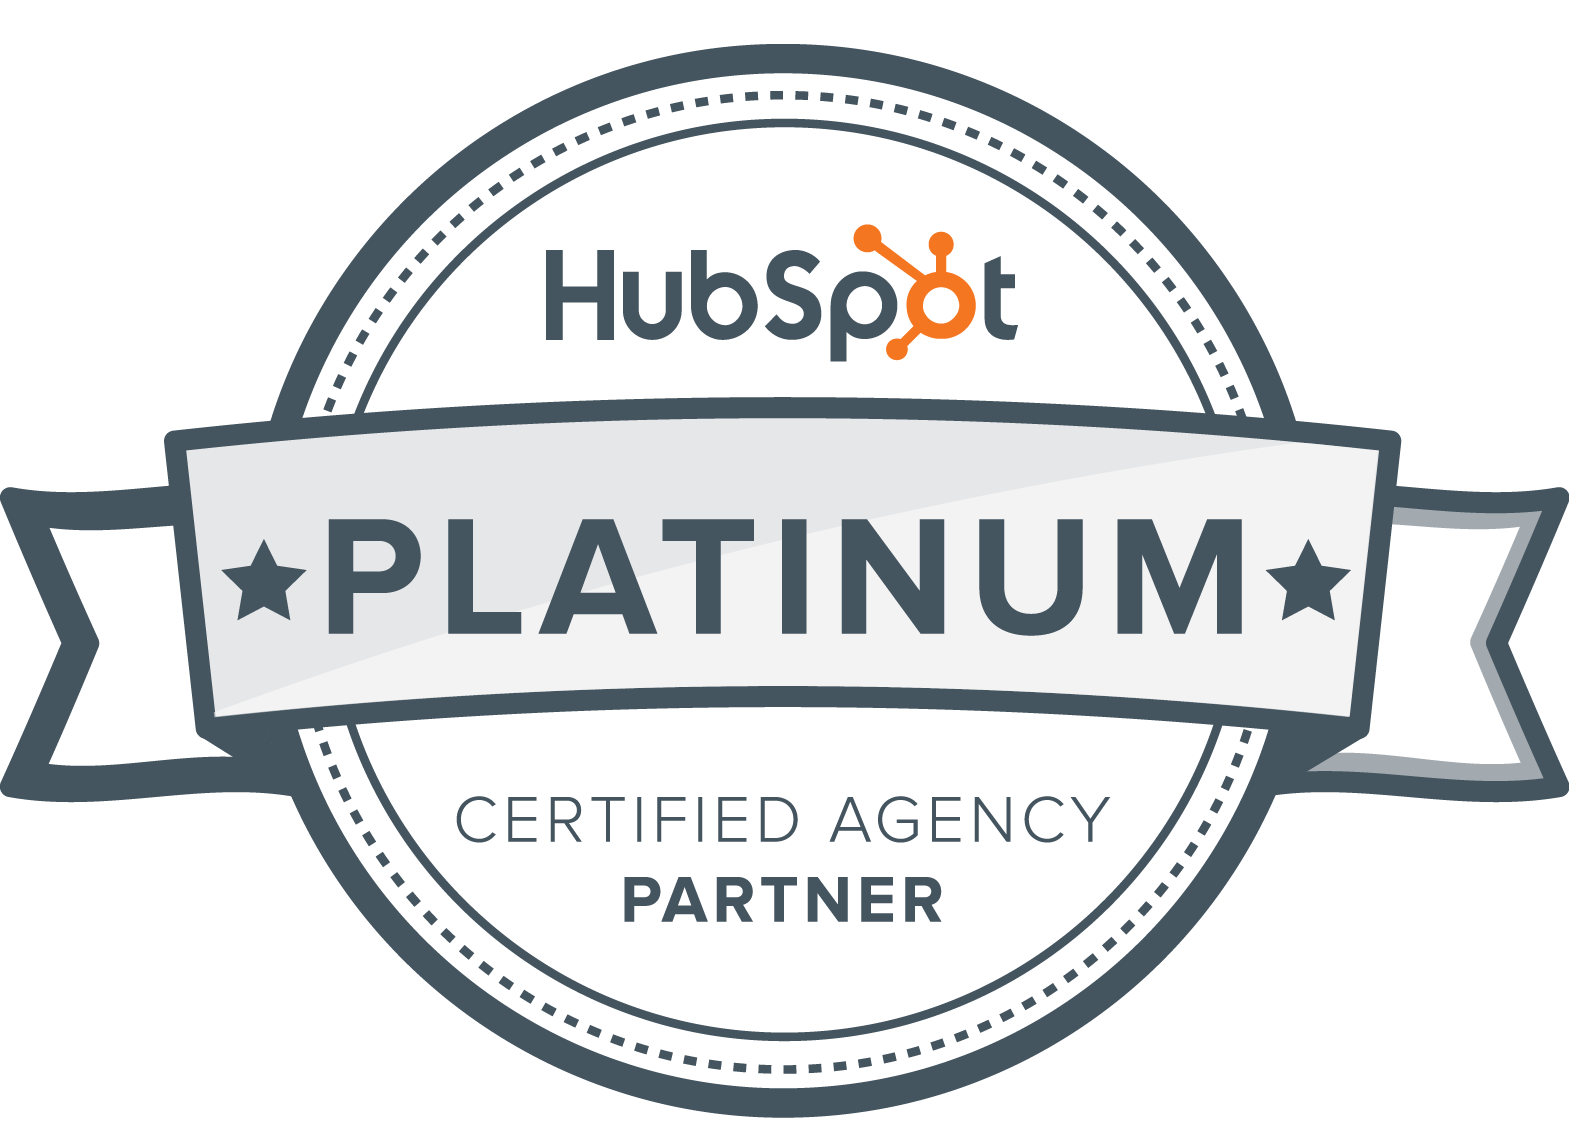 Hubspot_platinum_partner